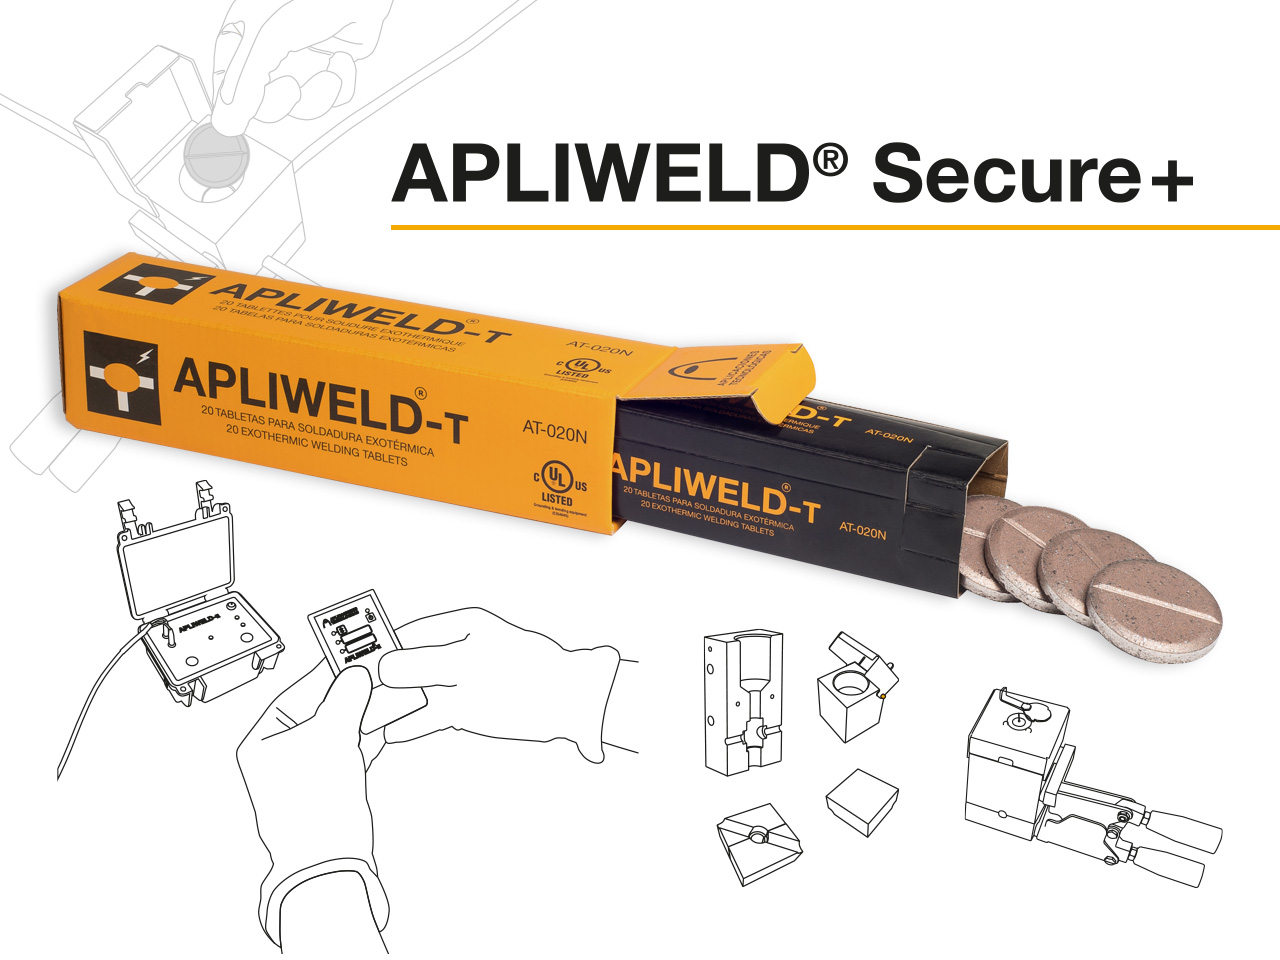 Apliweld® Secure+: soudure exothermique avec tablettes et allumage à distance |Nouvelles vidéos des instructions d’usage avec le moule spécifique et avec le moule multiple